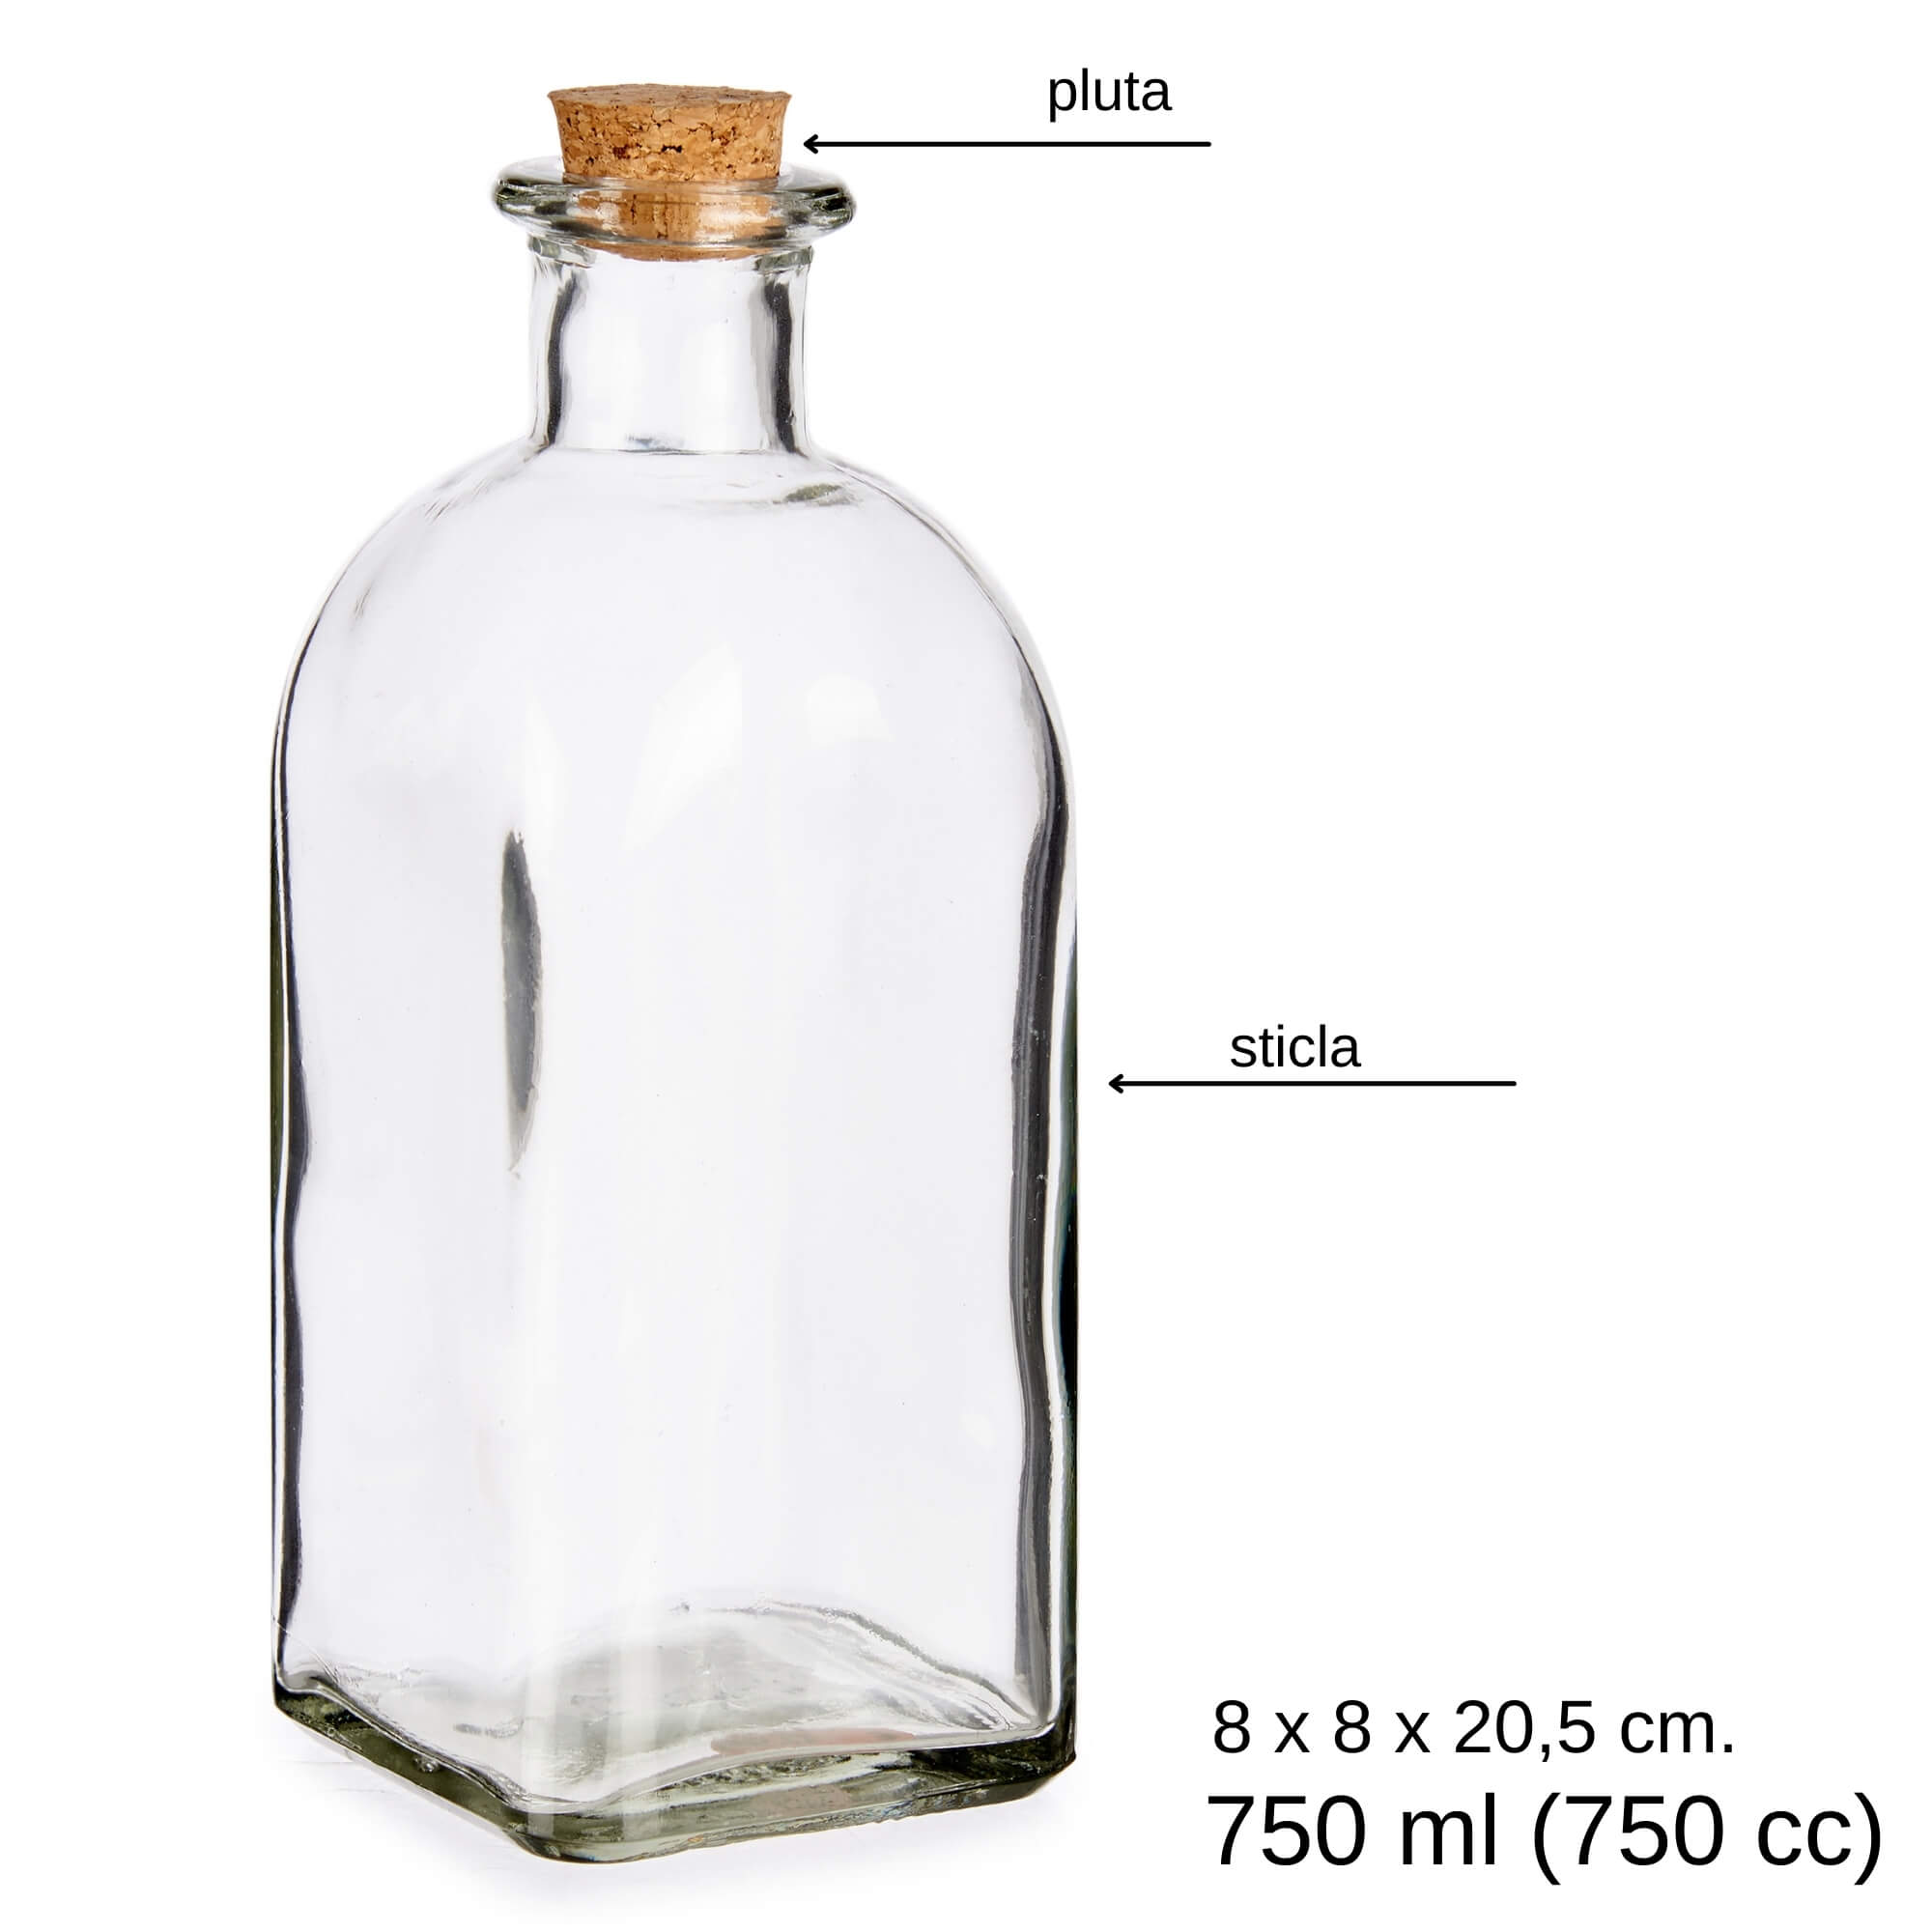 Poza Recipient sticla cu dop pluta pentru ulei, otet si alte condimente bucatarie 750 ml